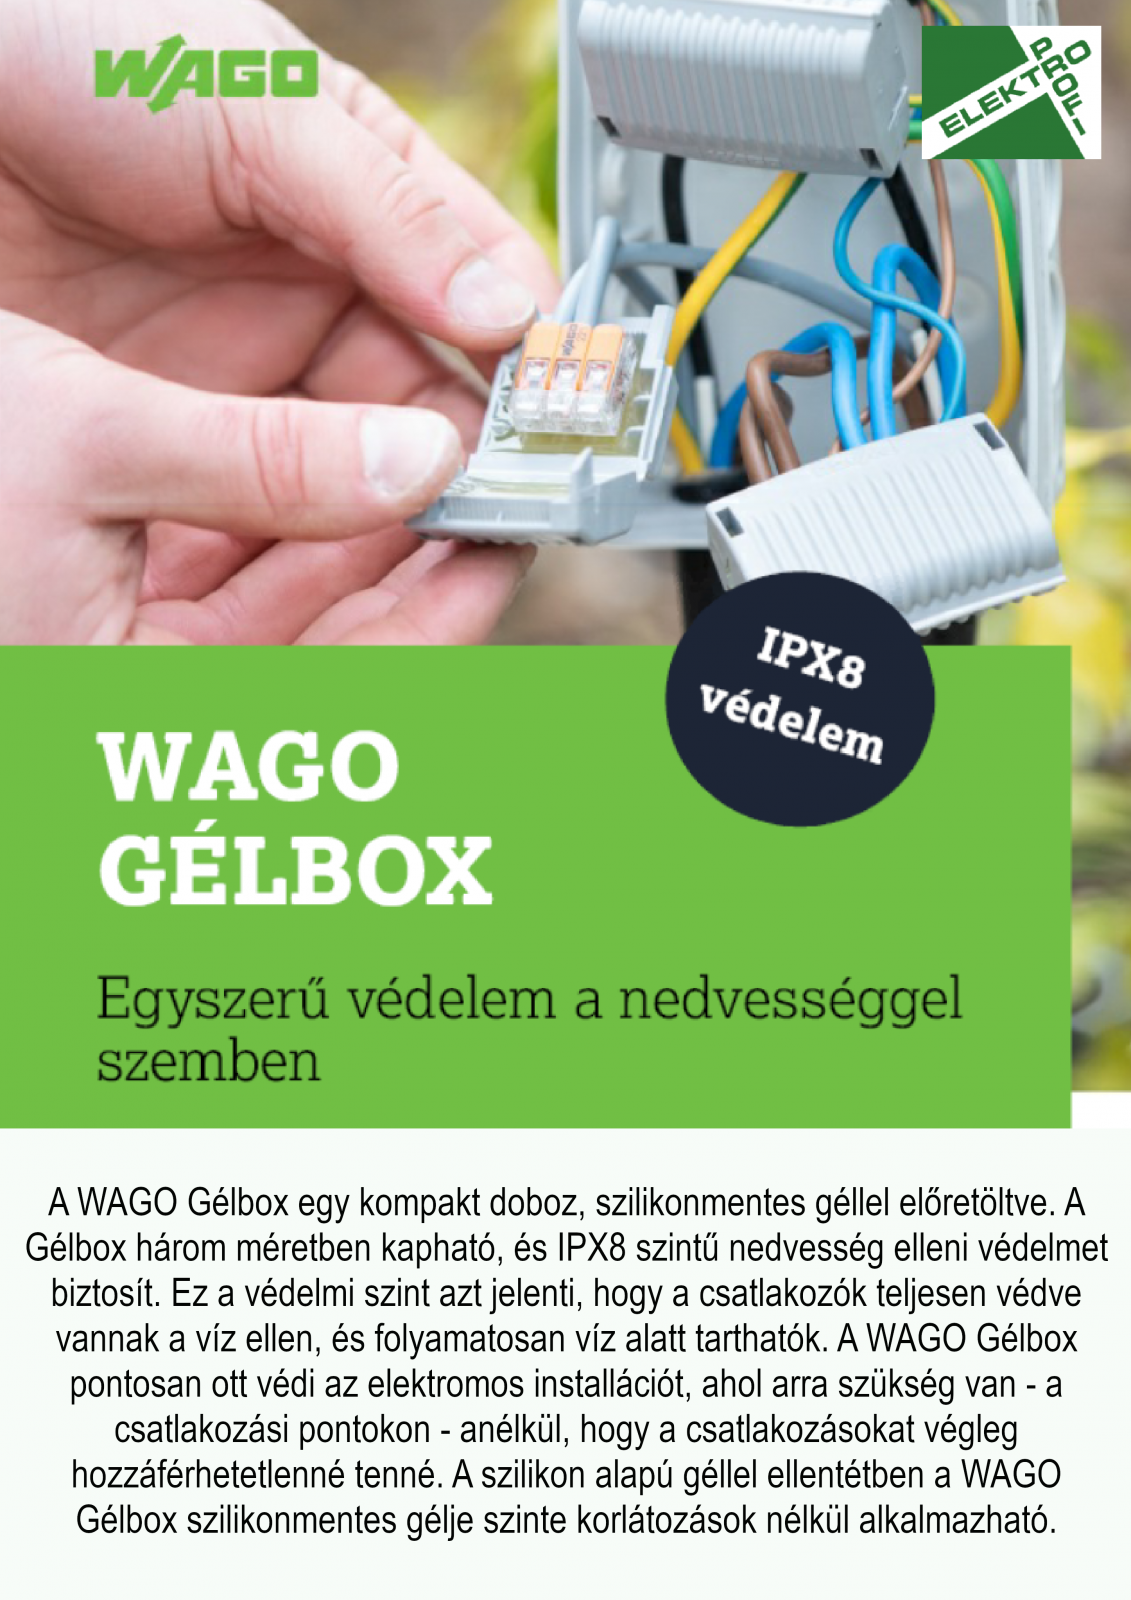 Wago új termék Gélbox